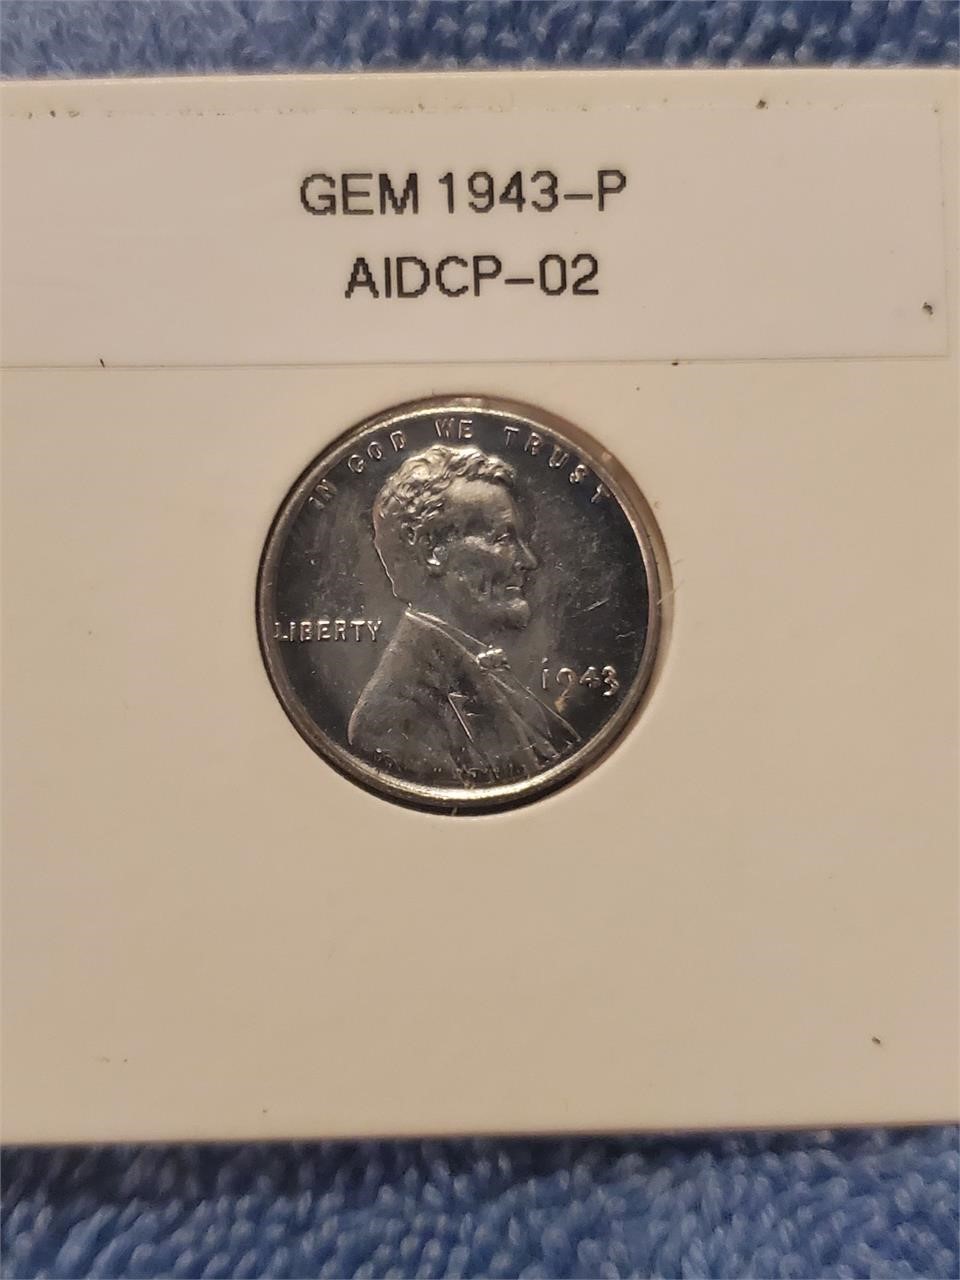 Gem 1943-P AIDCP-02